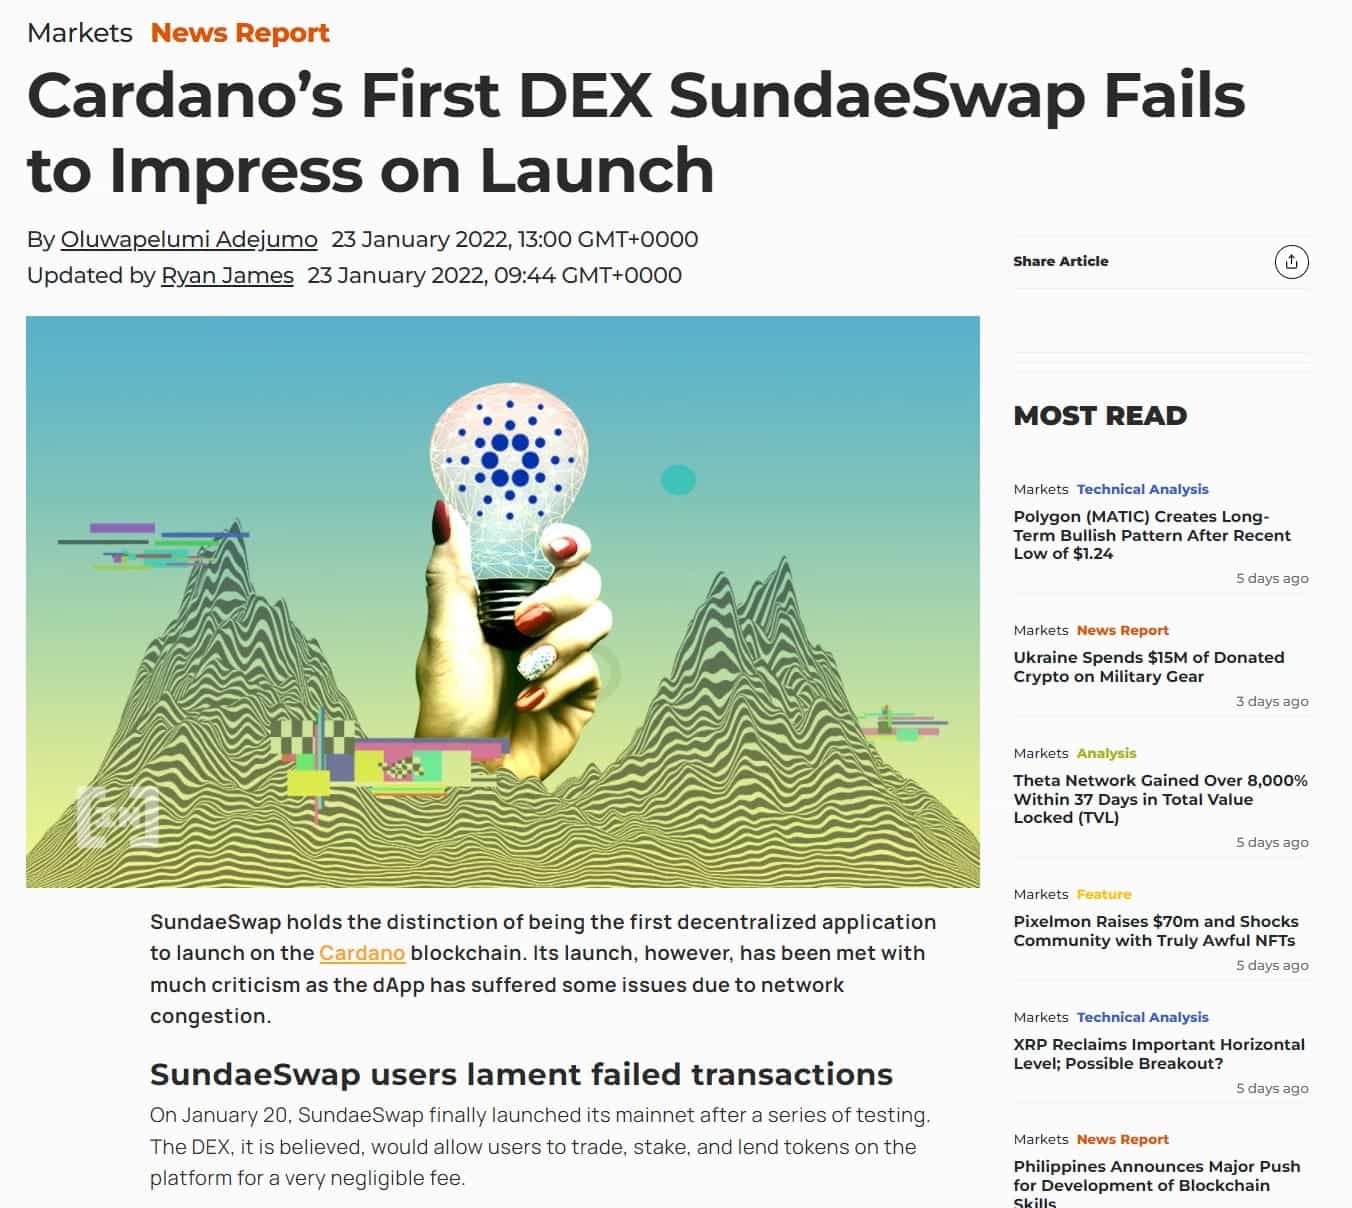 SundaeSwap launch